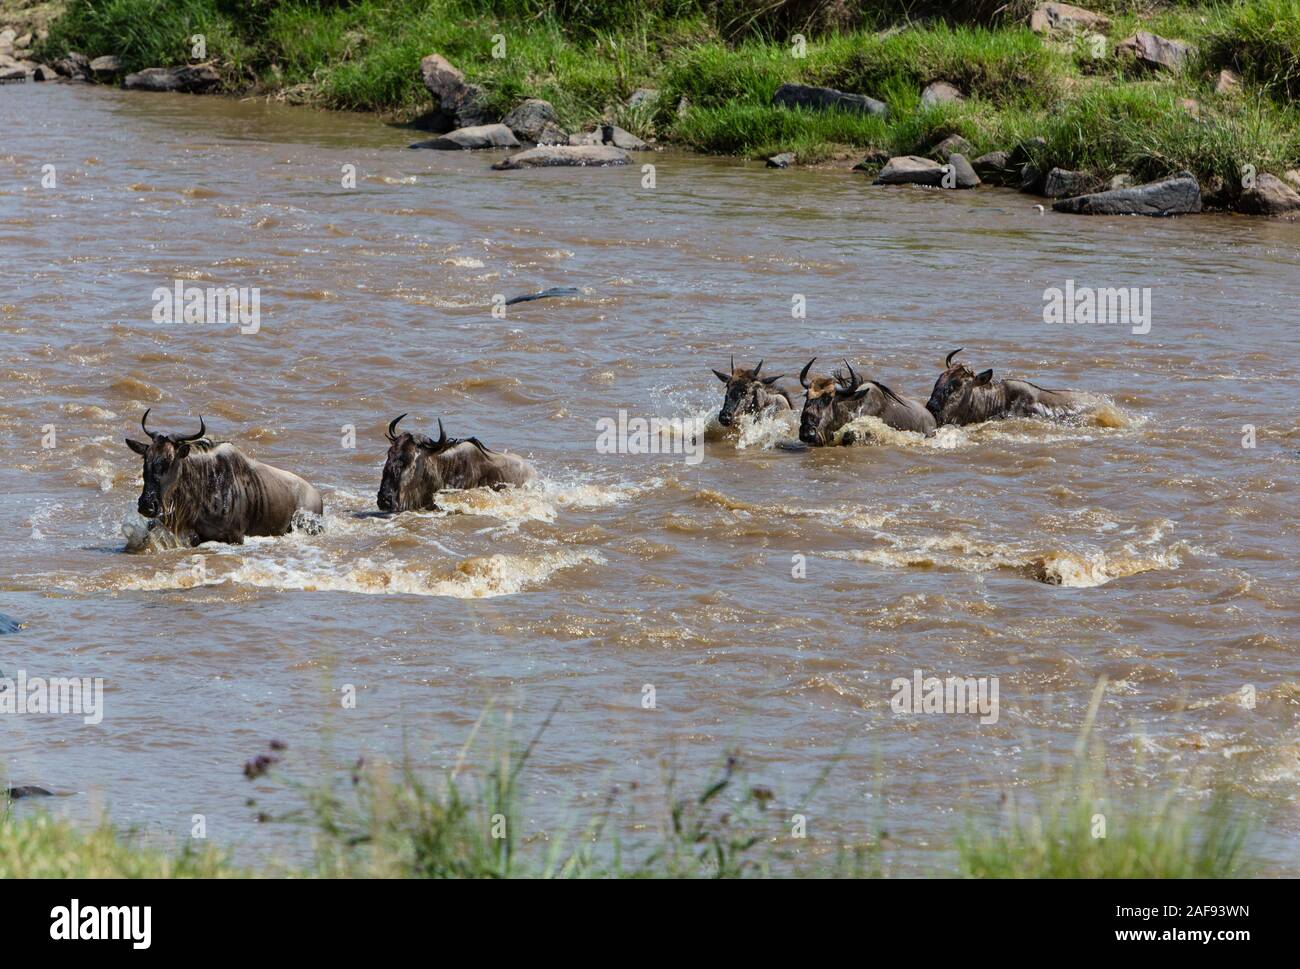 Tanzania. Serengeti. Wildebeest Crossing the Mara River. Stock Photo